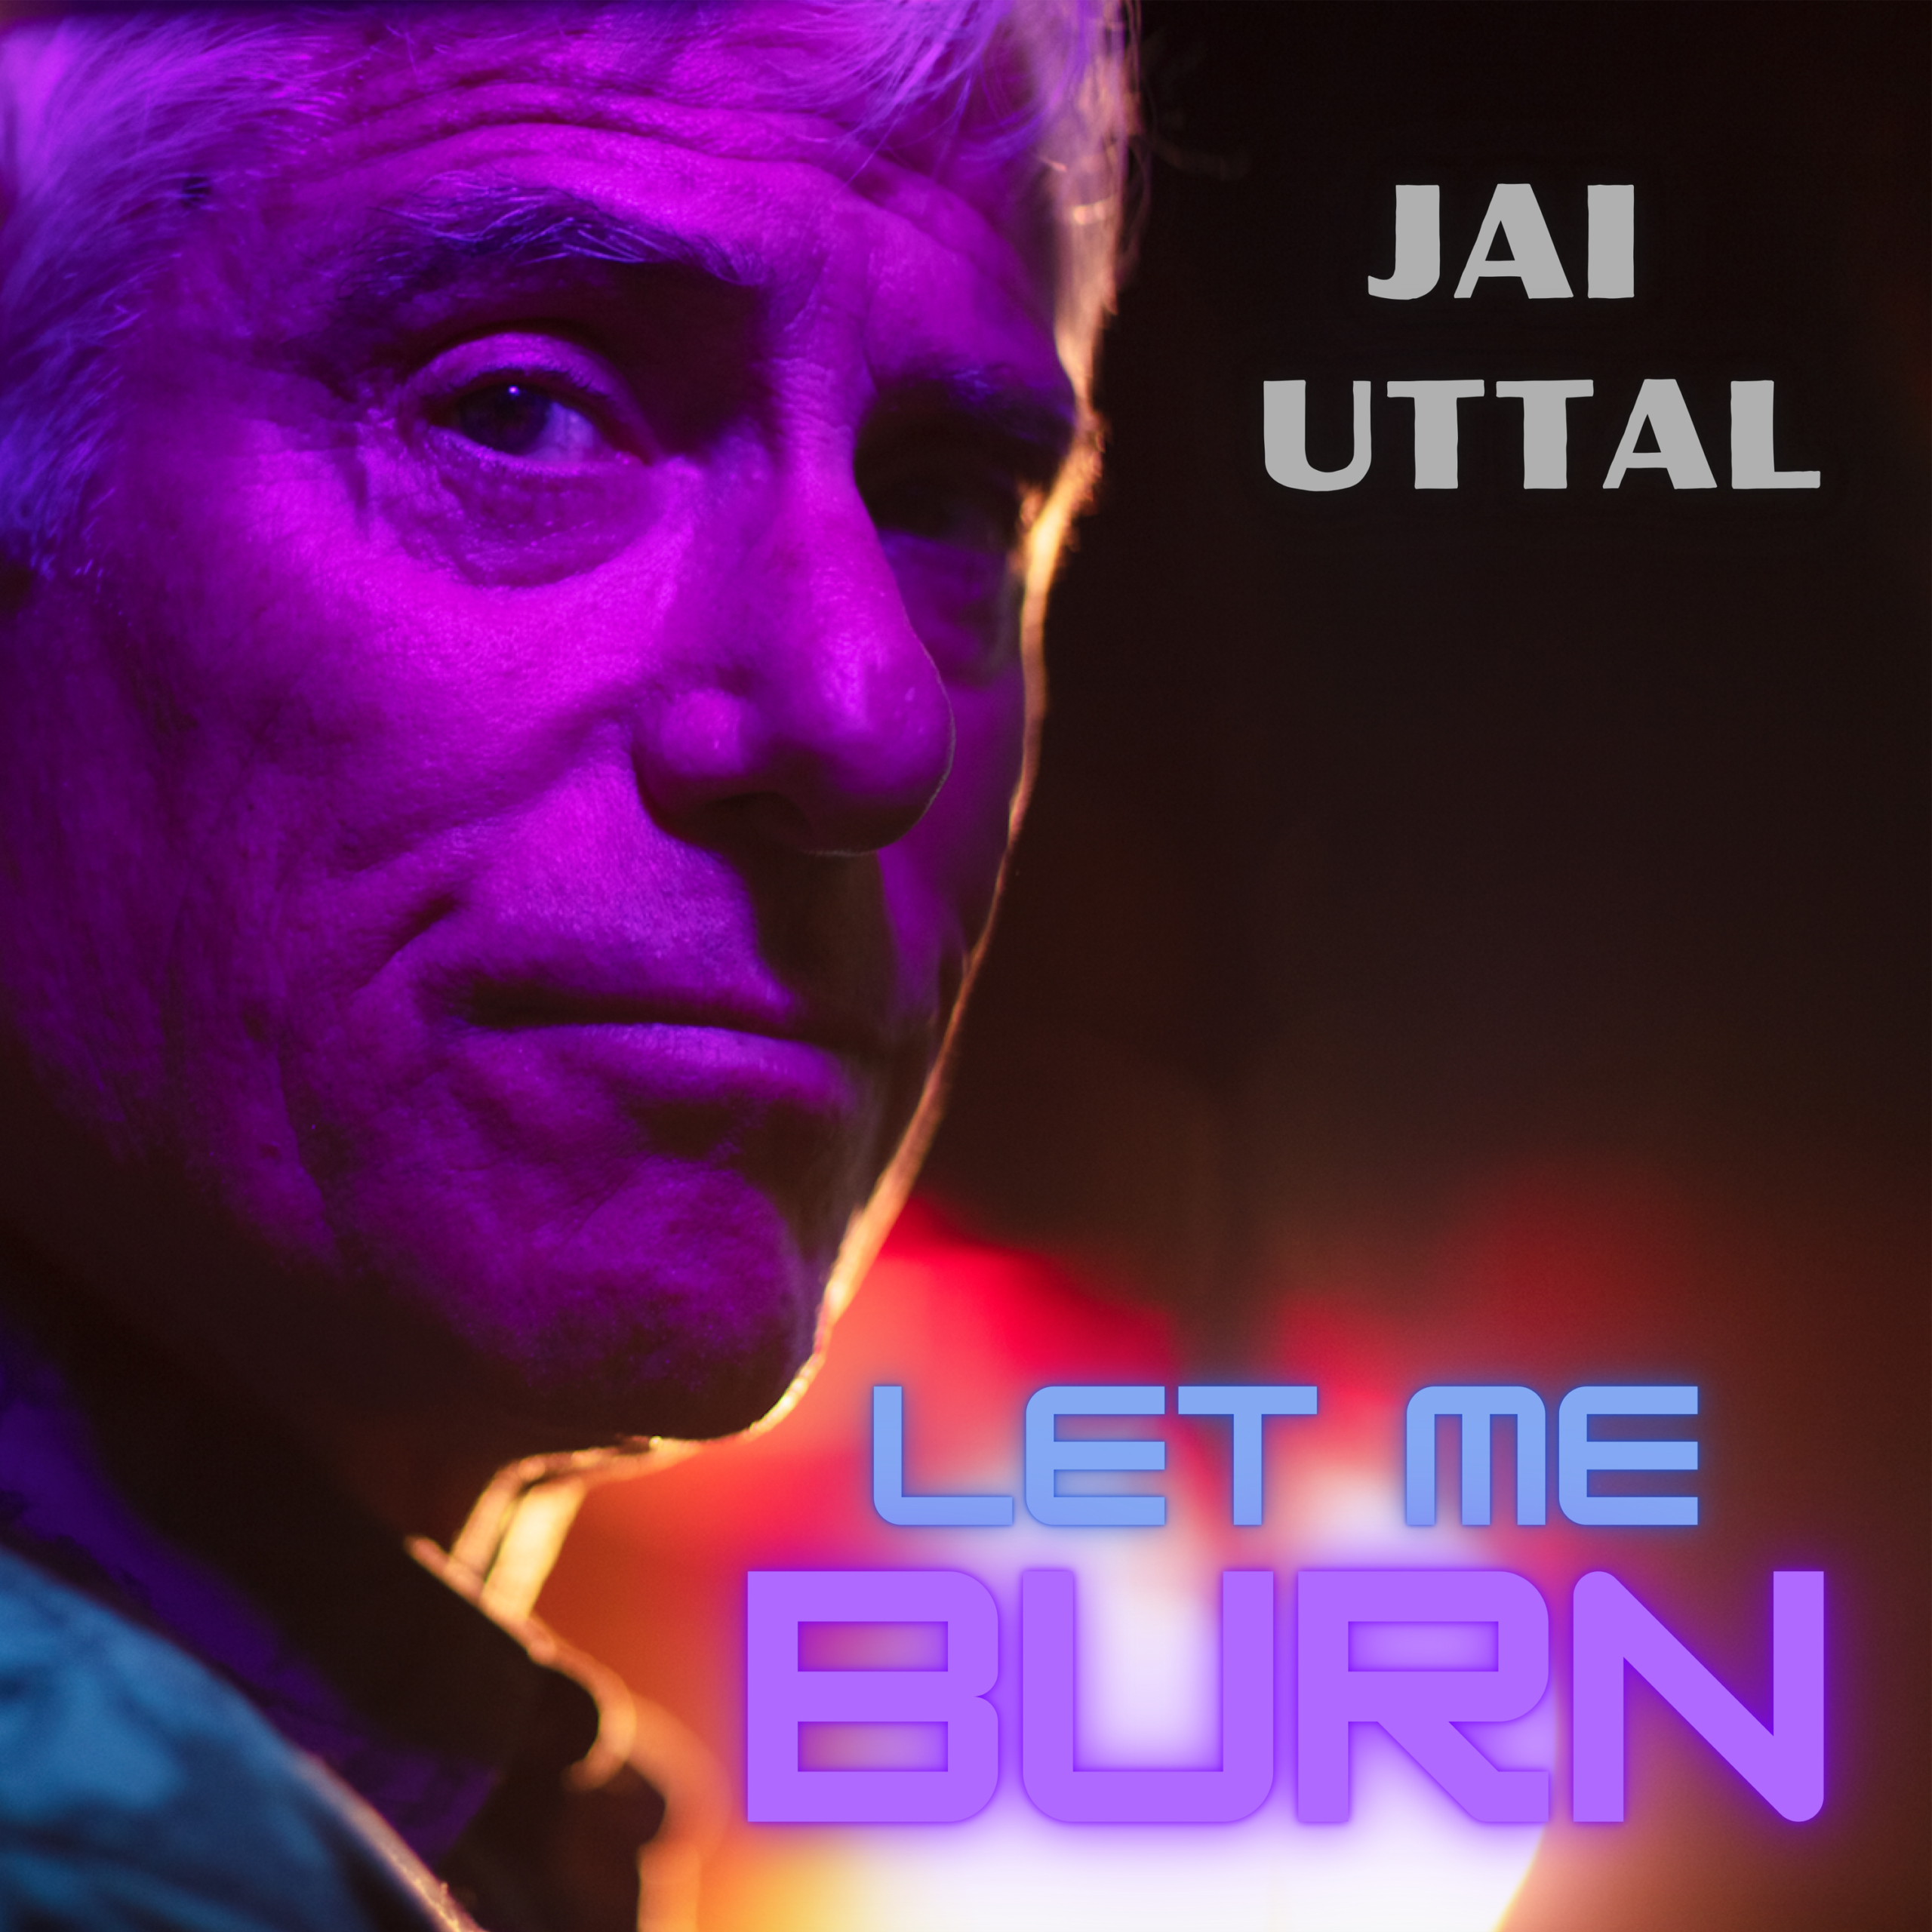 Let me burn, by Jai Uttal